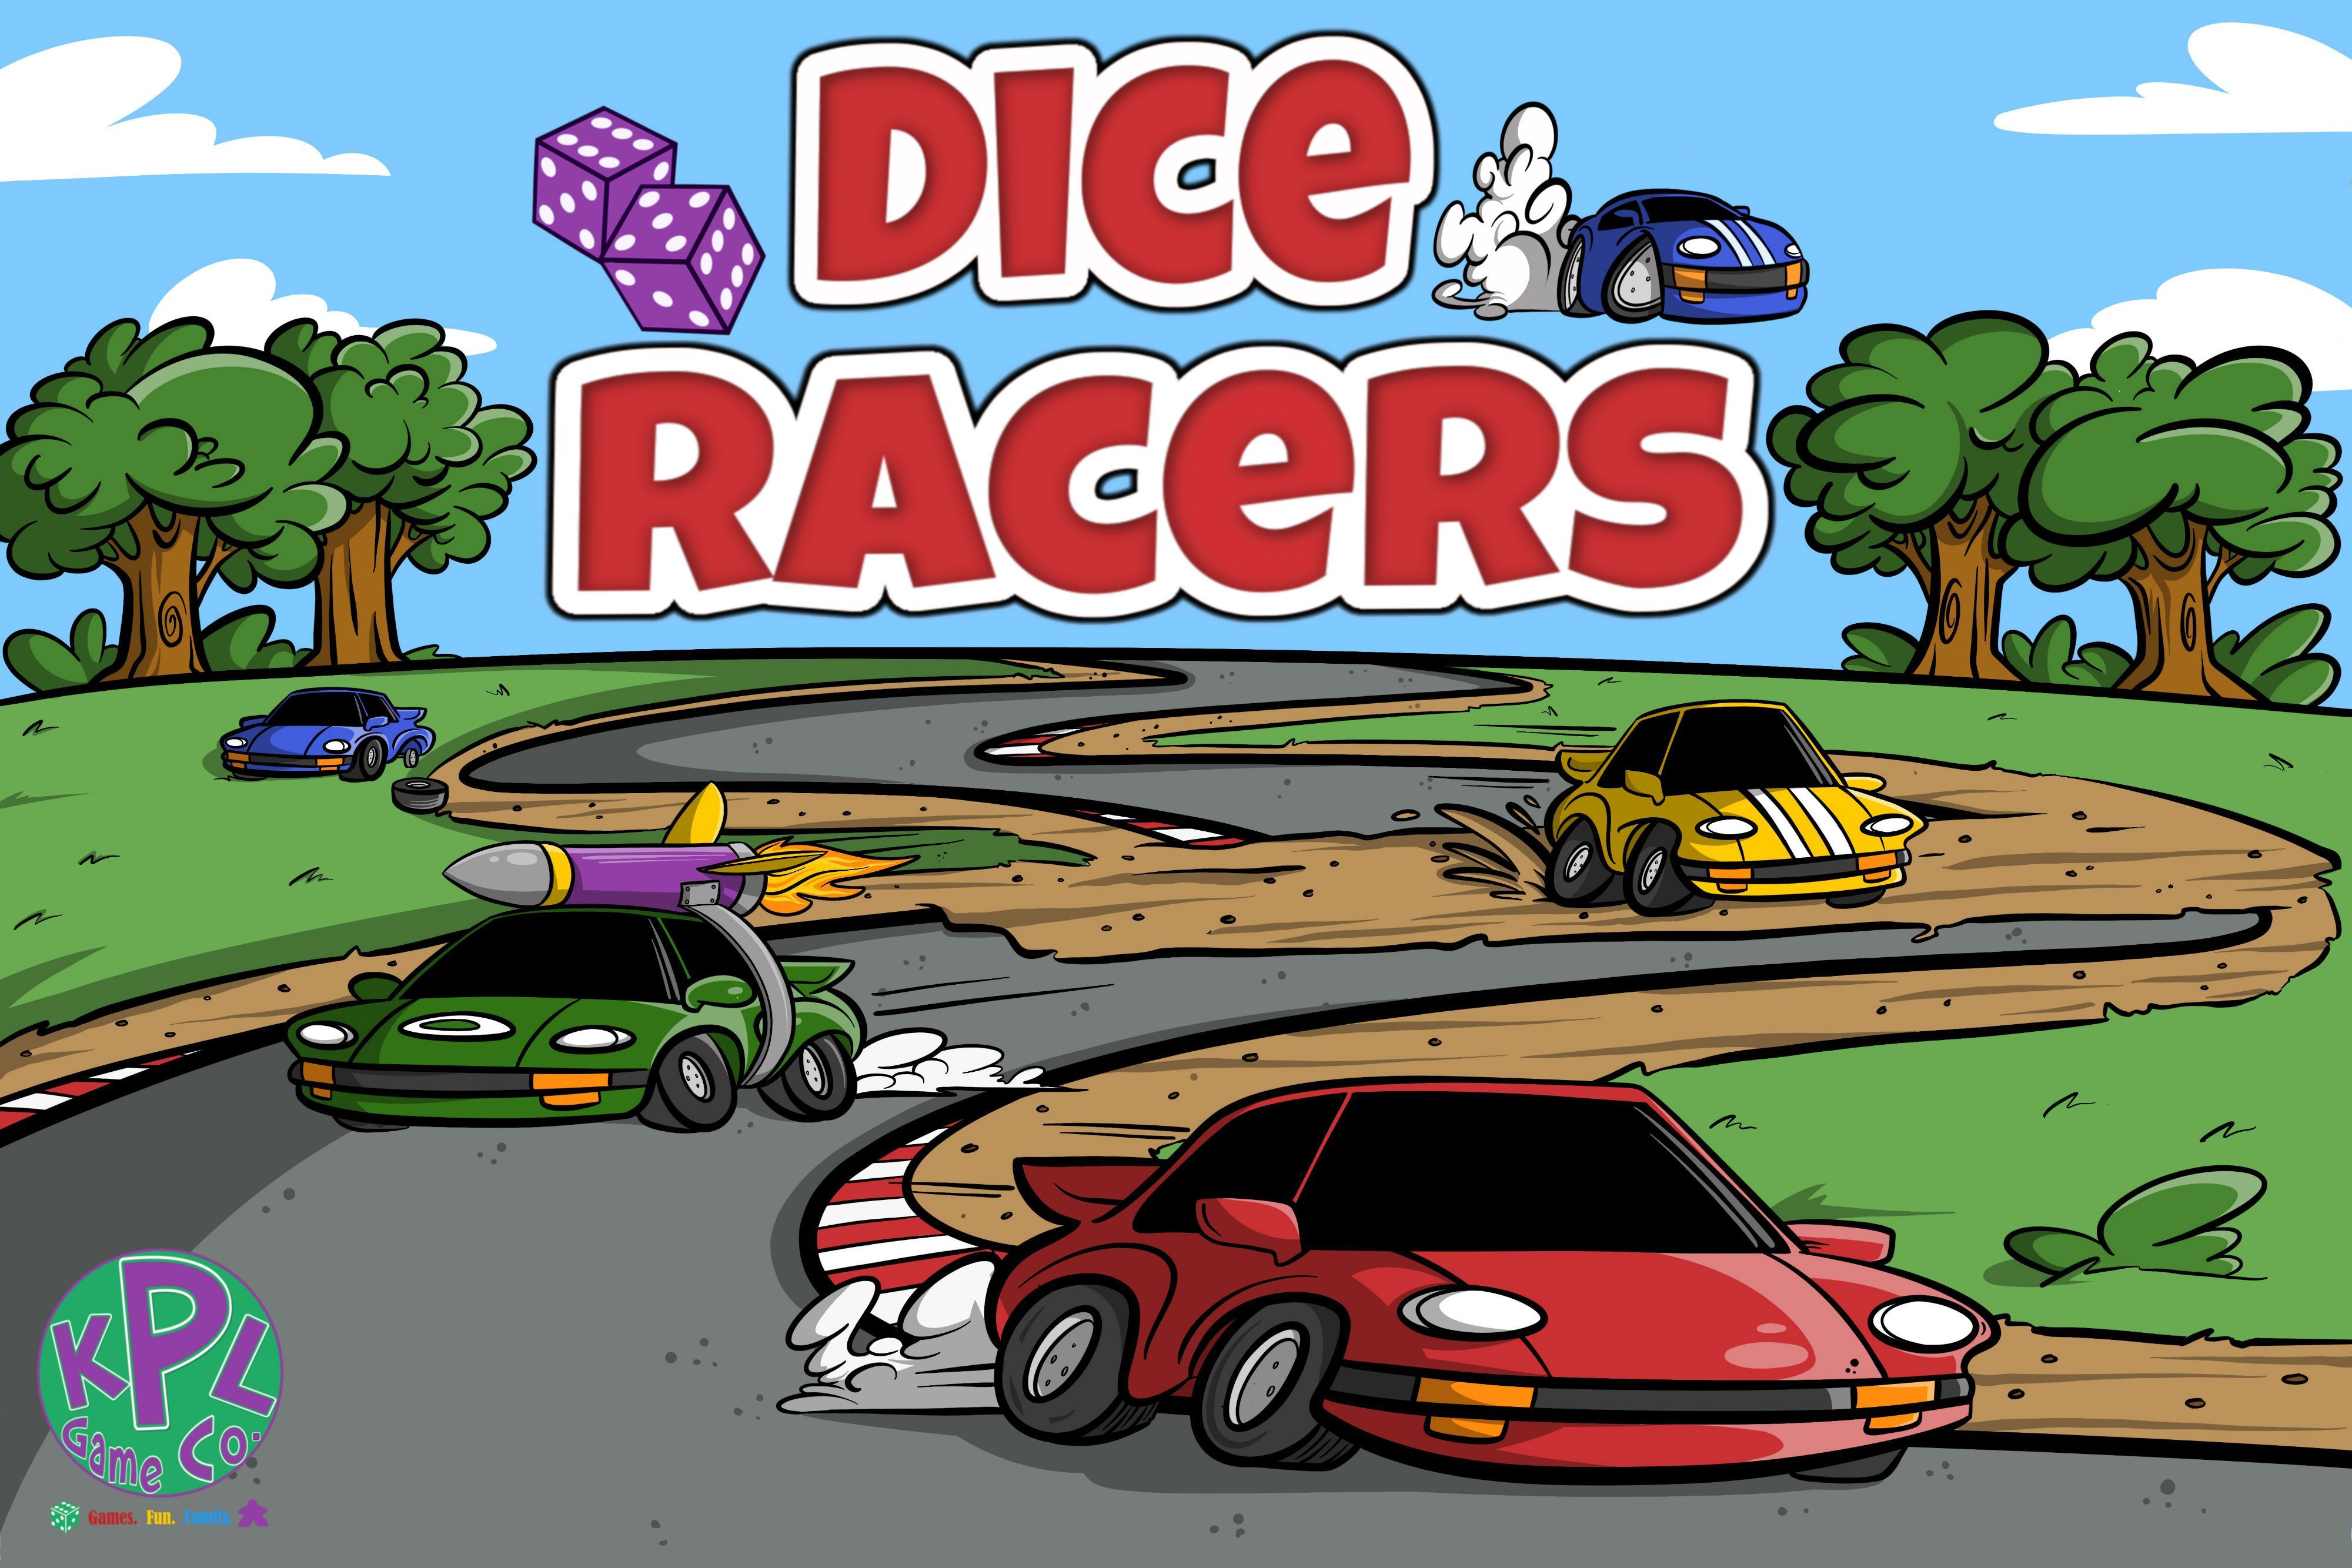 Dice Racers